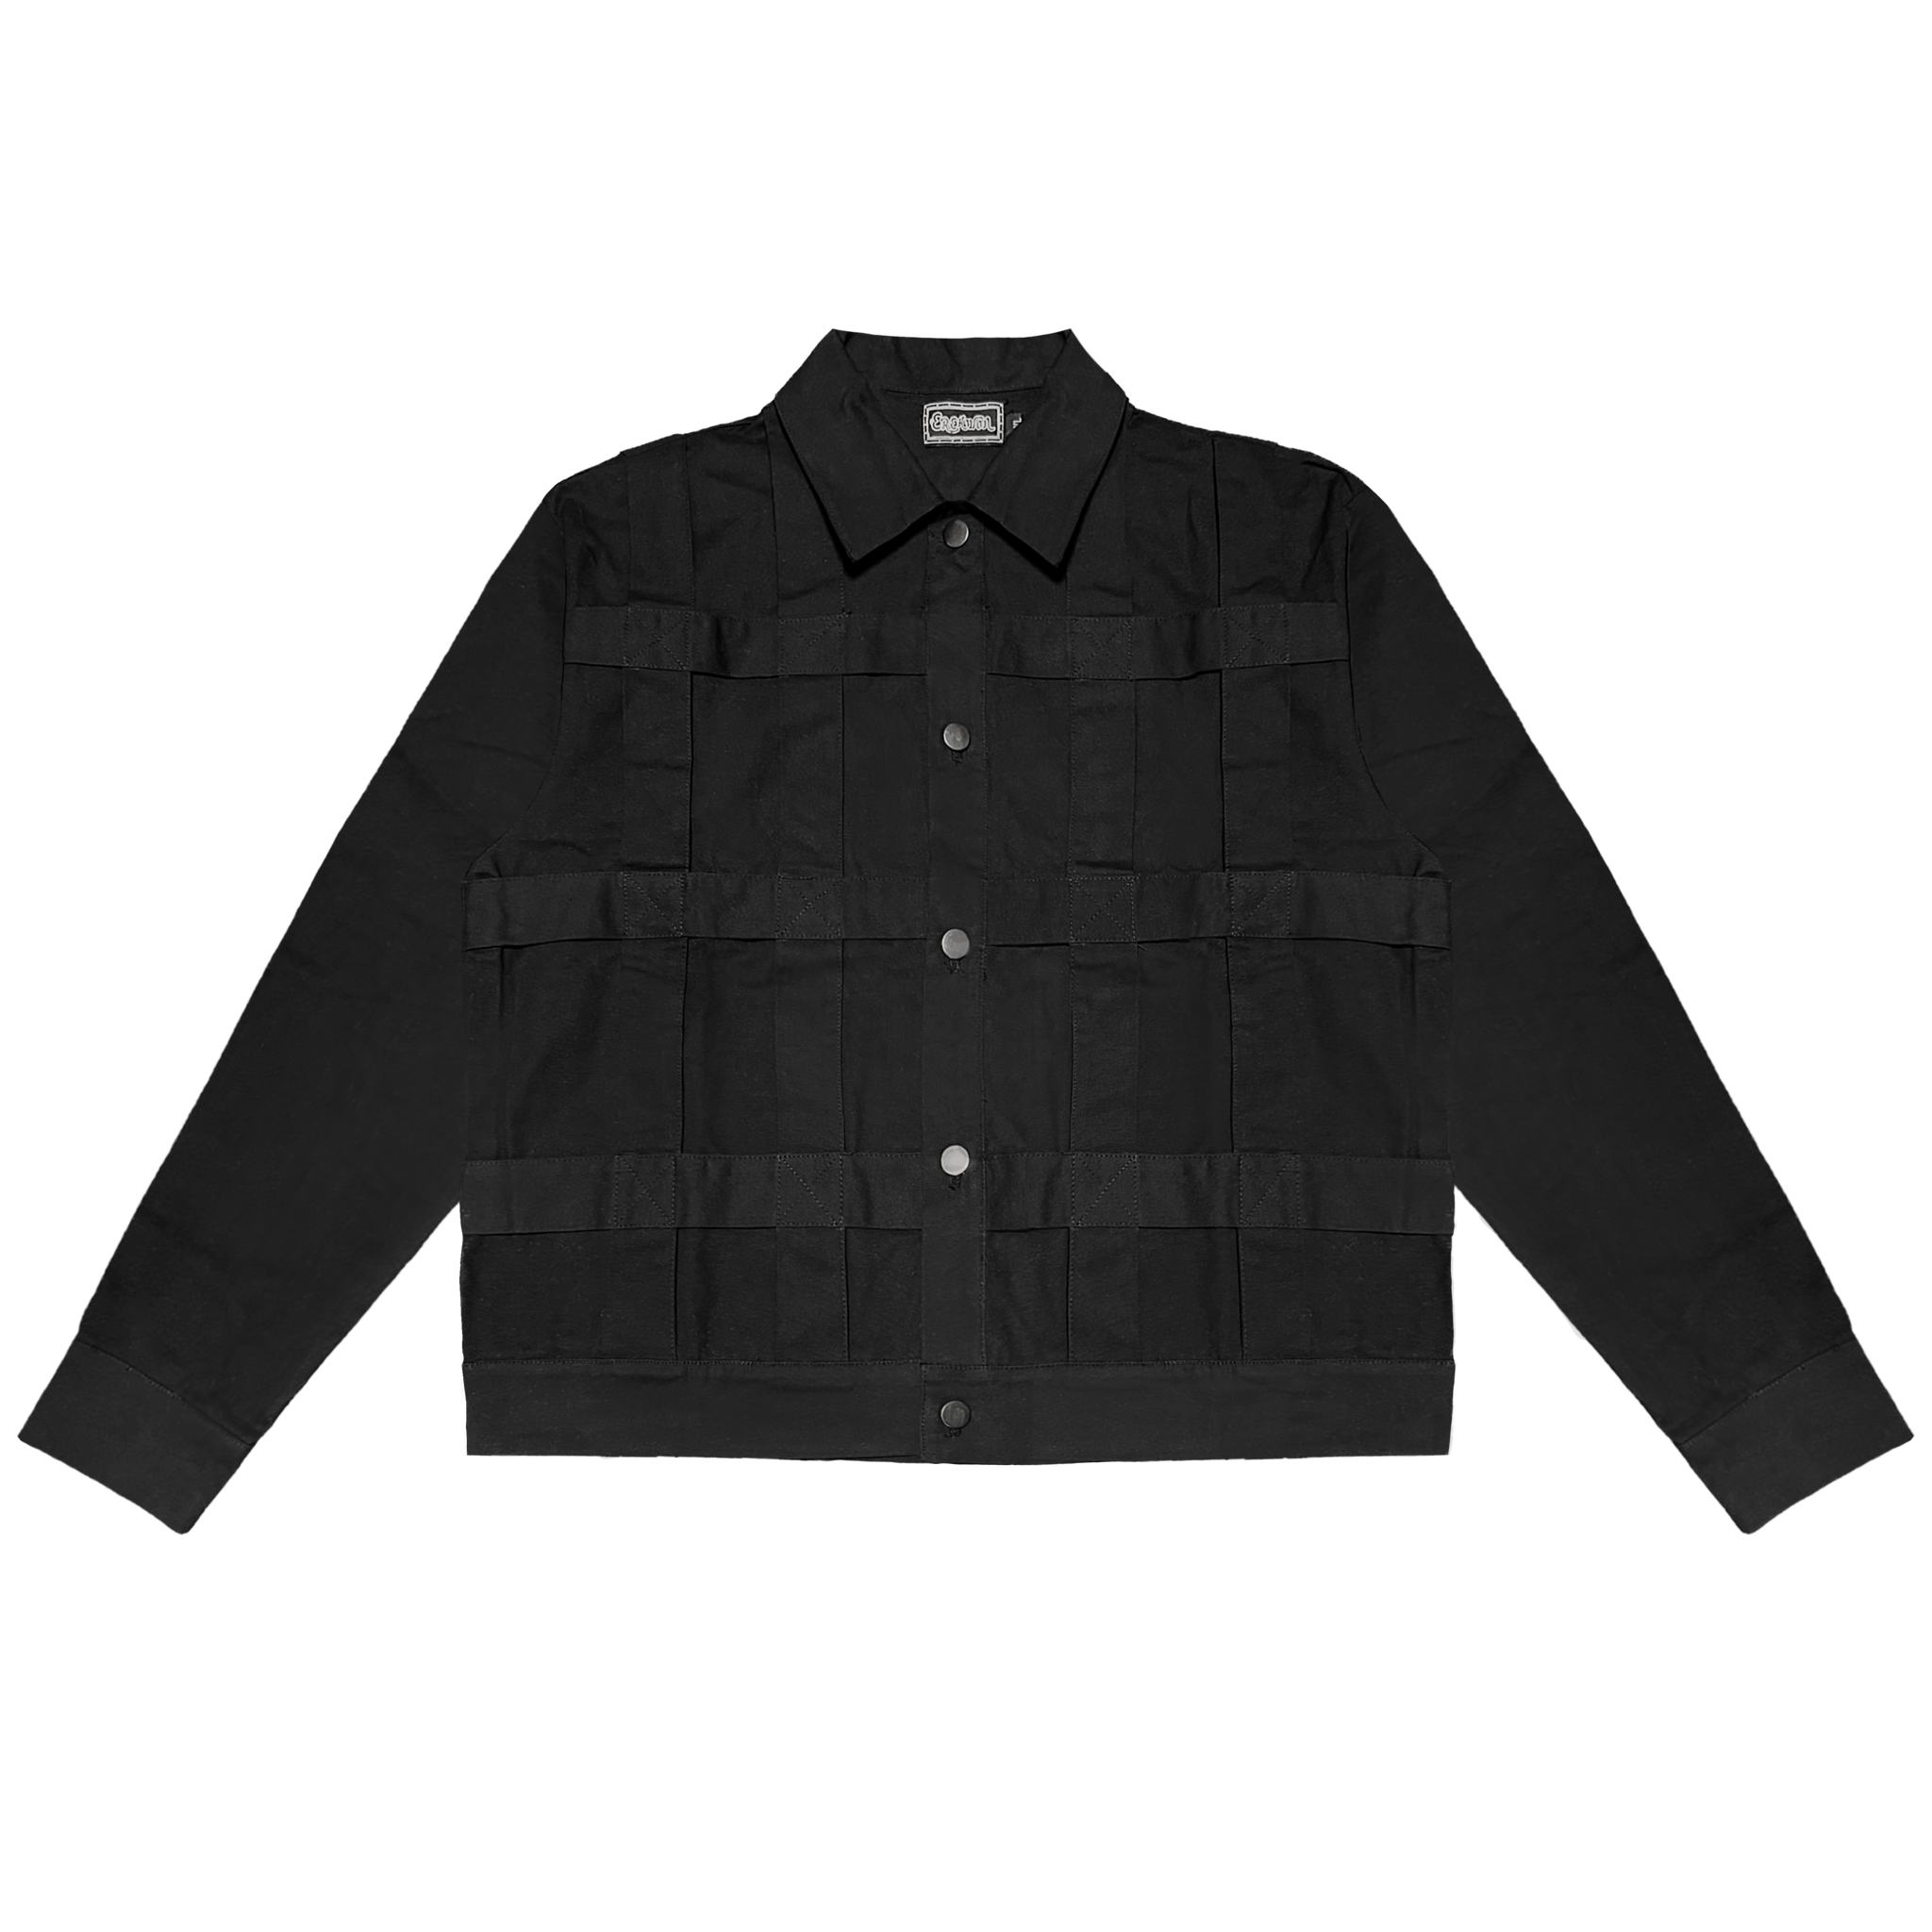 The Ouroboros Jacket